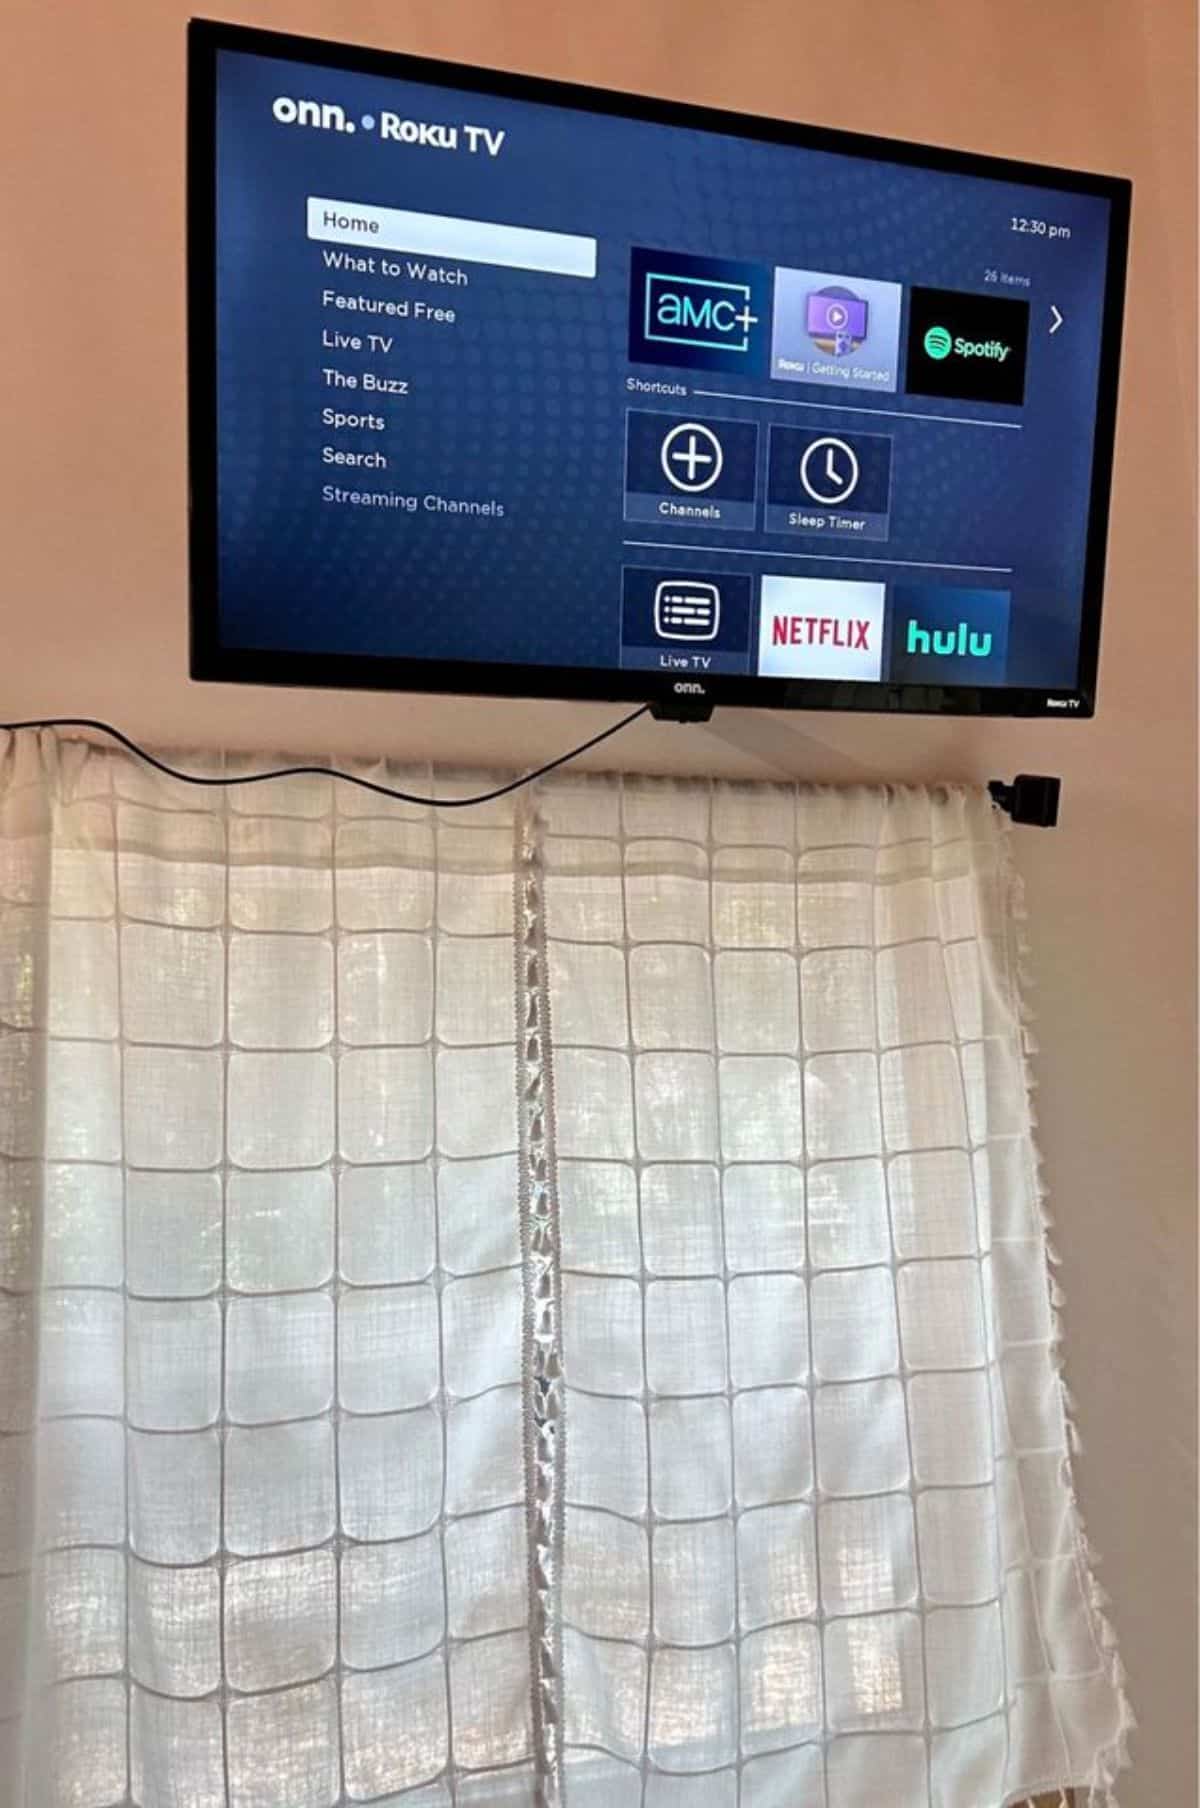 Roku TV is installed in the bedroom